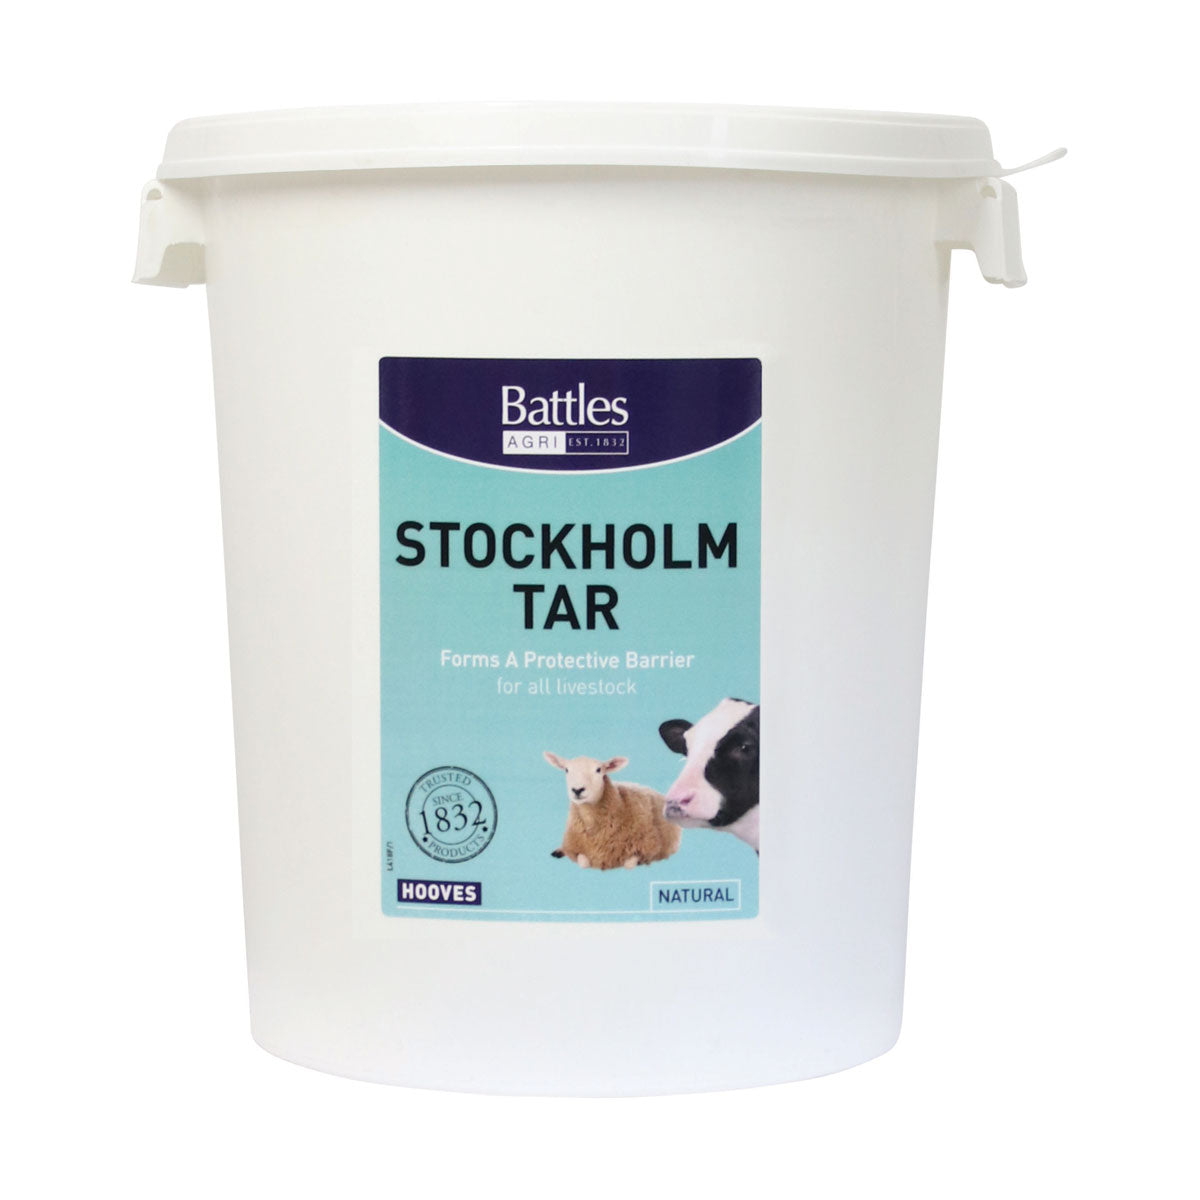 Battles Stockholm Tar Veterinary Battles 25kg Barnstaple Equestrian Supplies